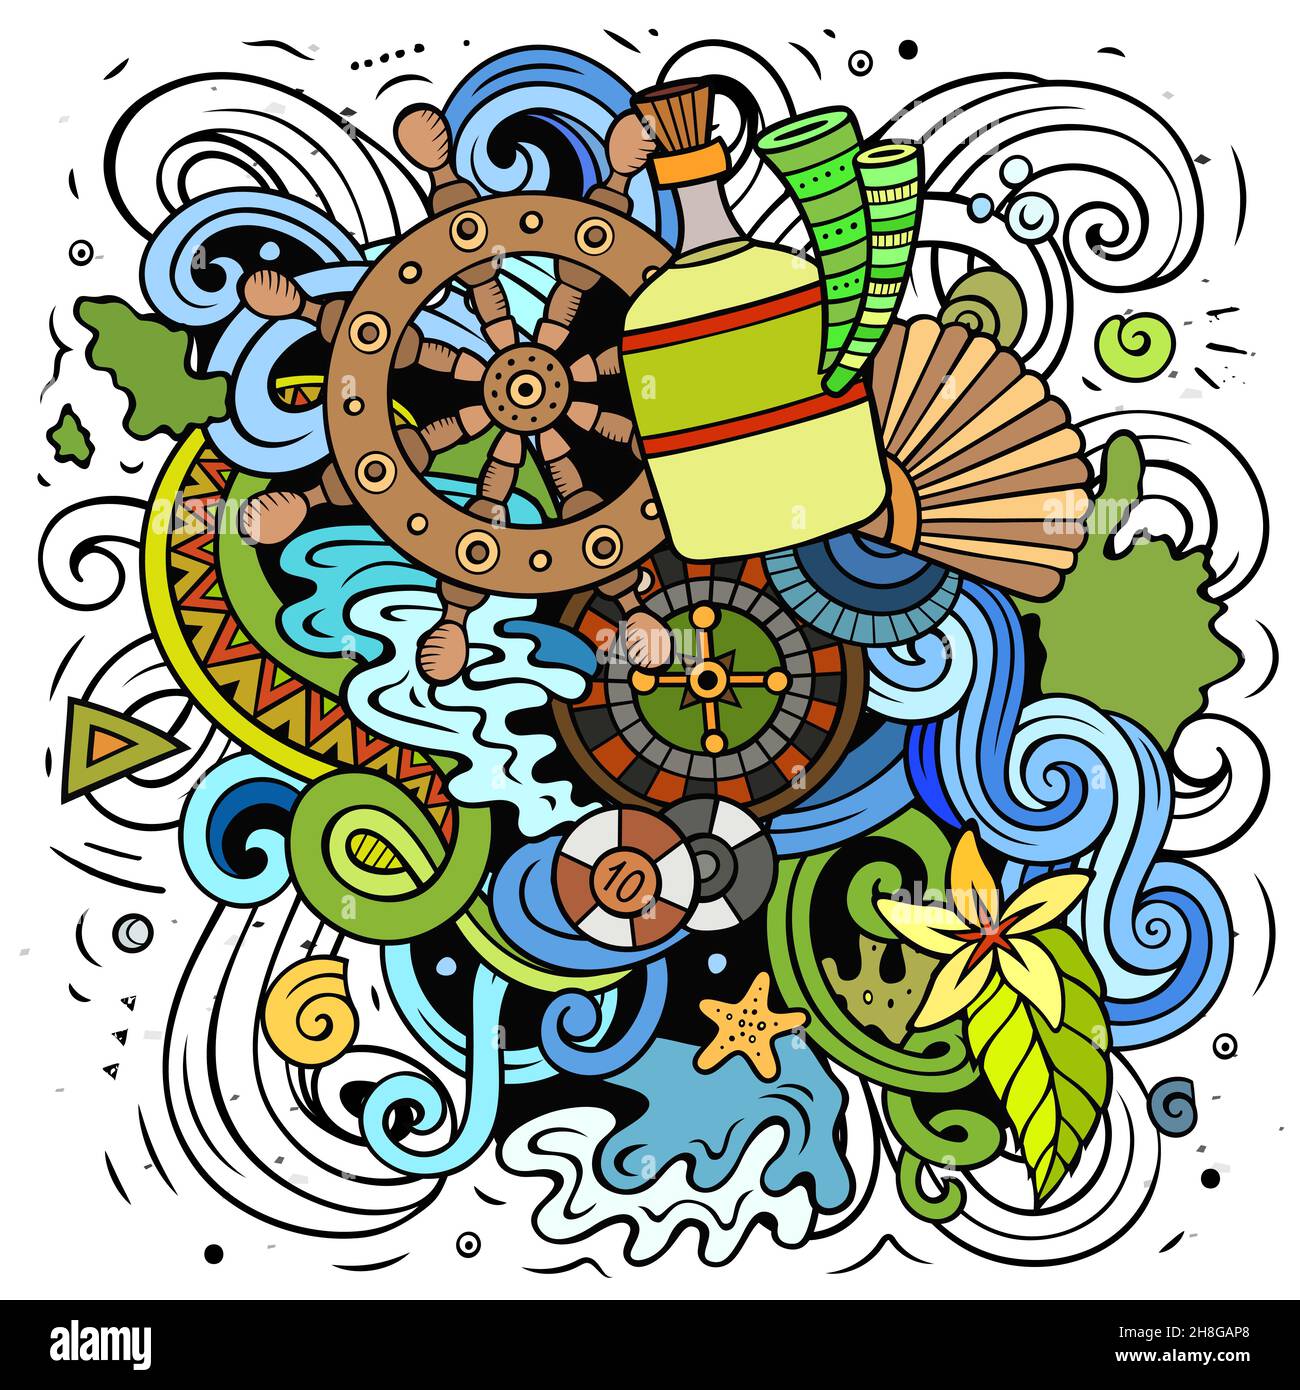 Bahamas cartoon vettore Doodle illustrazione. Composizione colorata e dettagliata con molti oggetti e simboli tropicali. Illustrazione Vettoriale